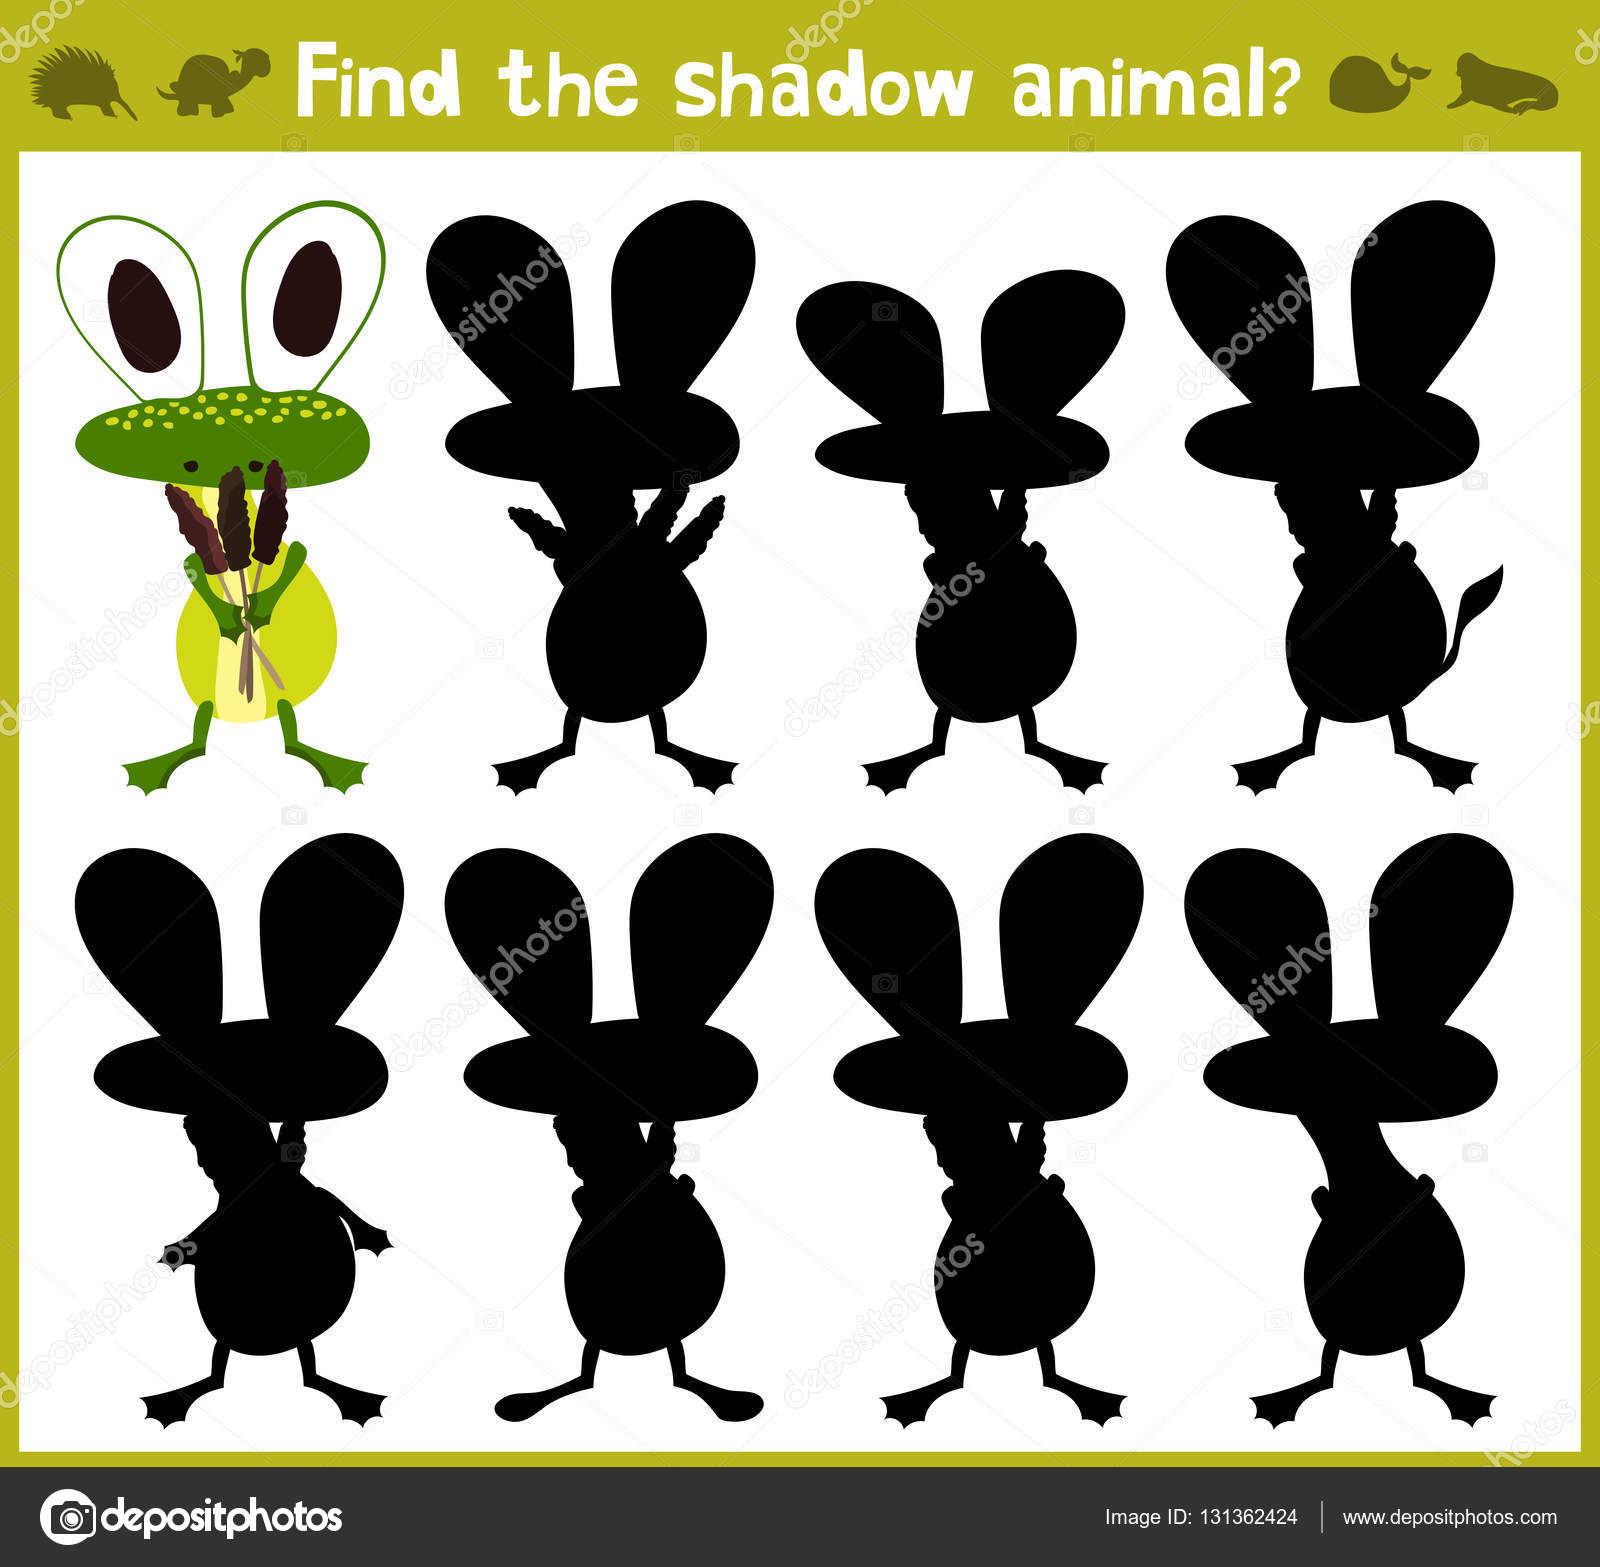 Encontre a sombra certa .. jogos educativos. jogos de lógica para